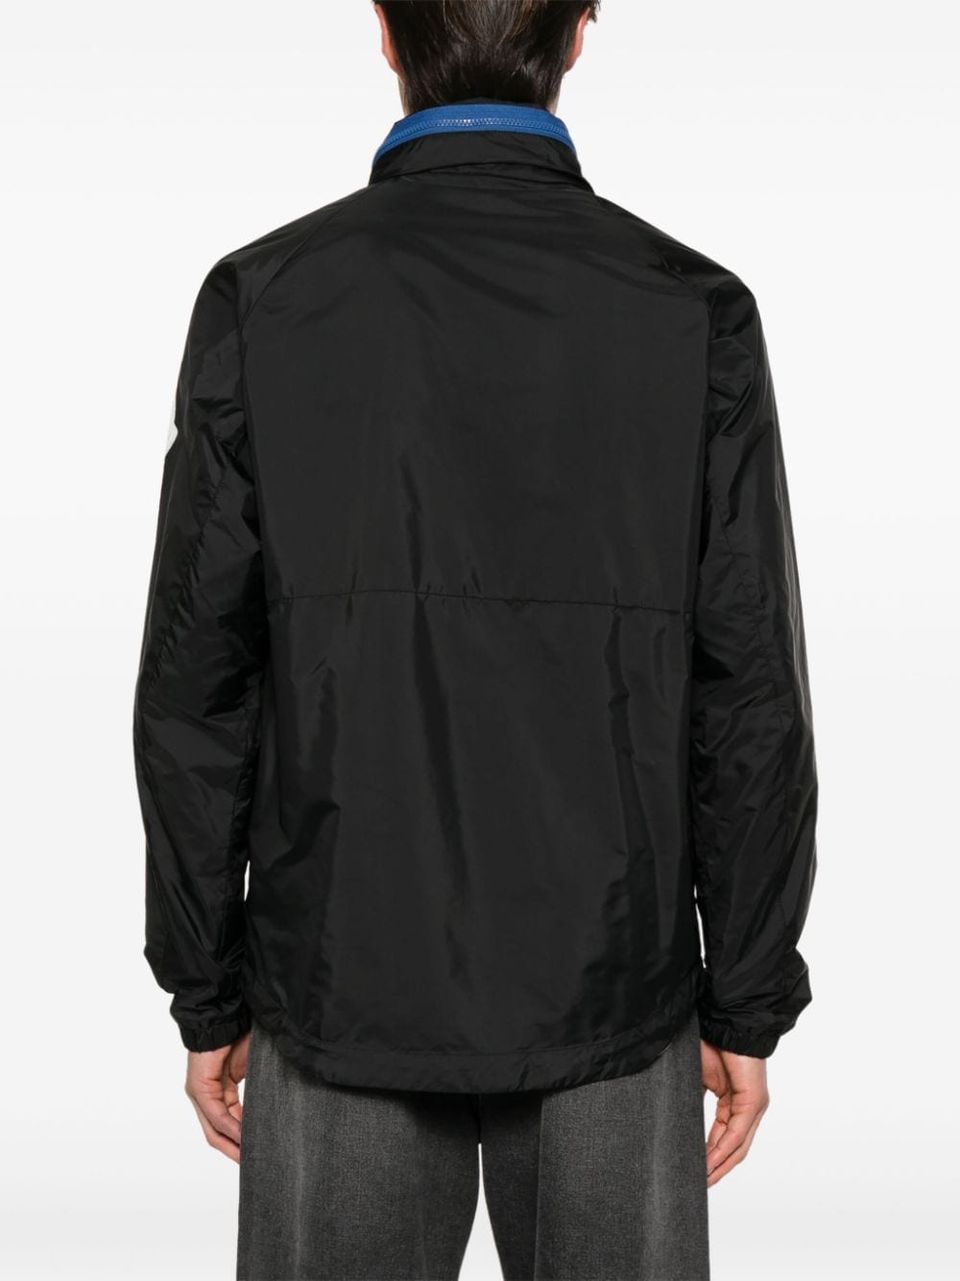 Octano waterproof jacket